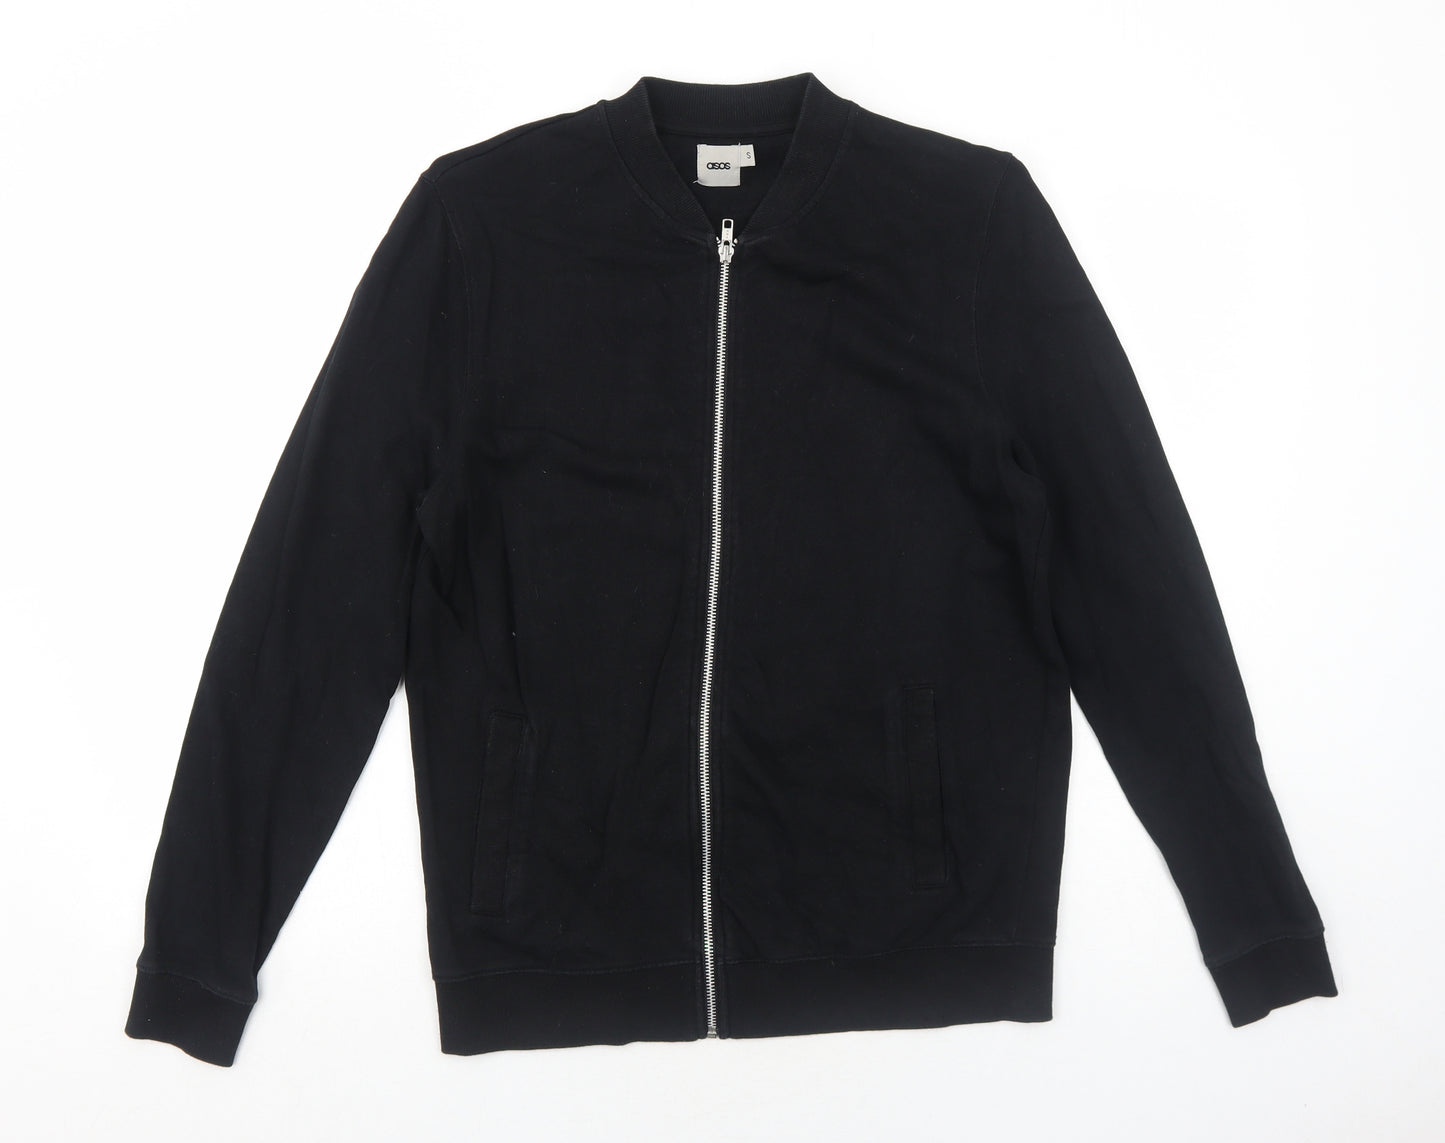 ASOS Mens Black Polyester Full Zip Sweatshirt Size S Zip